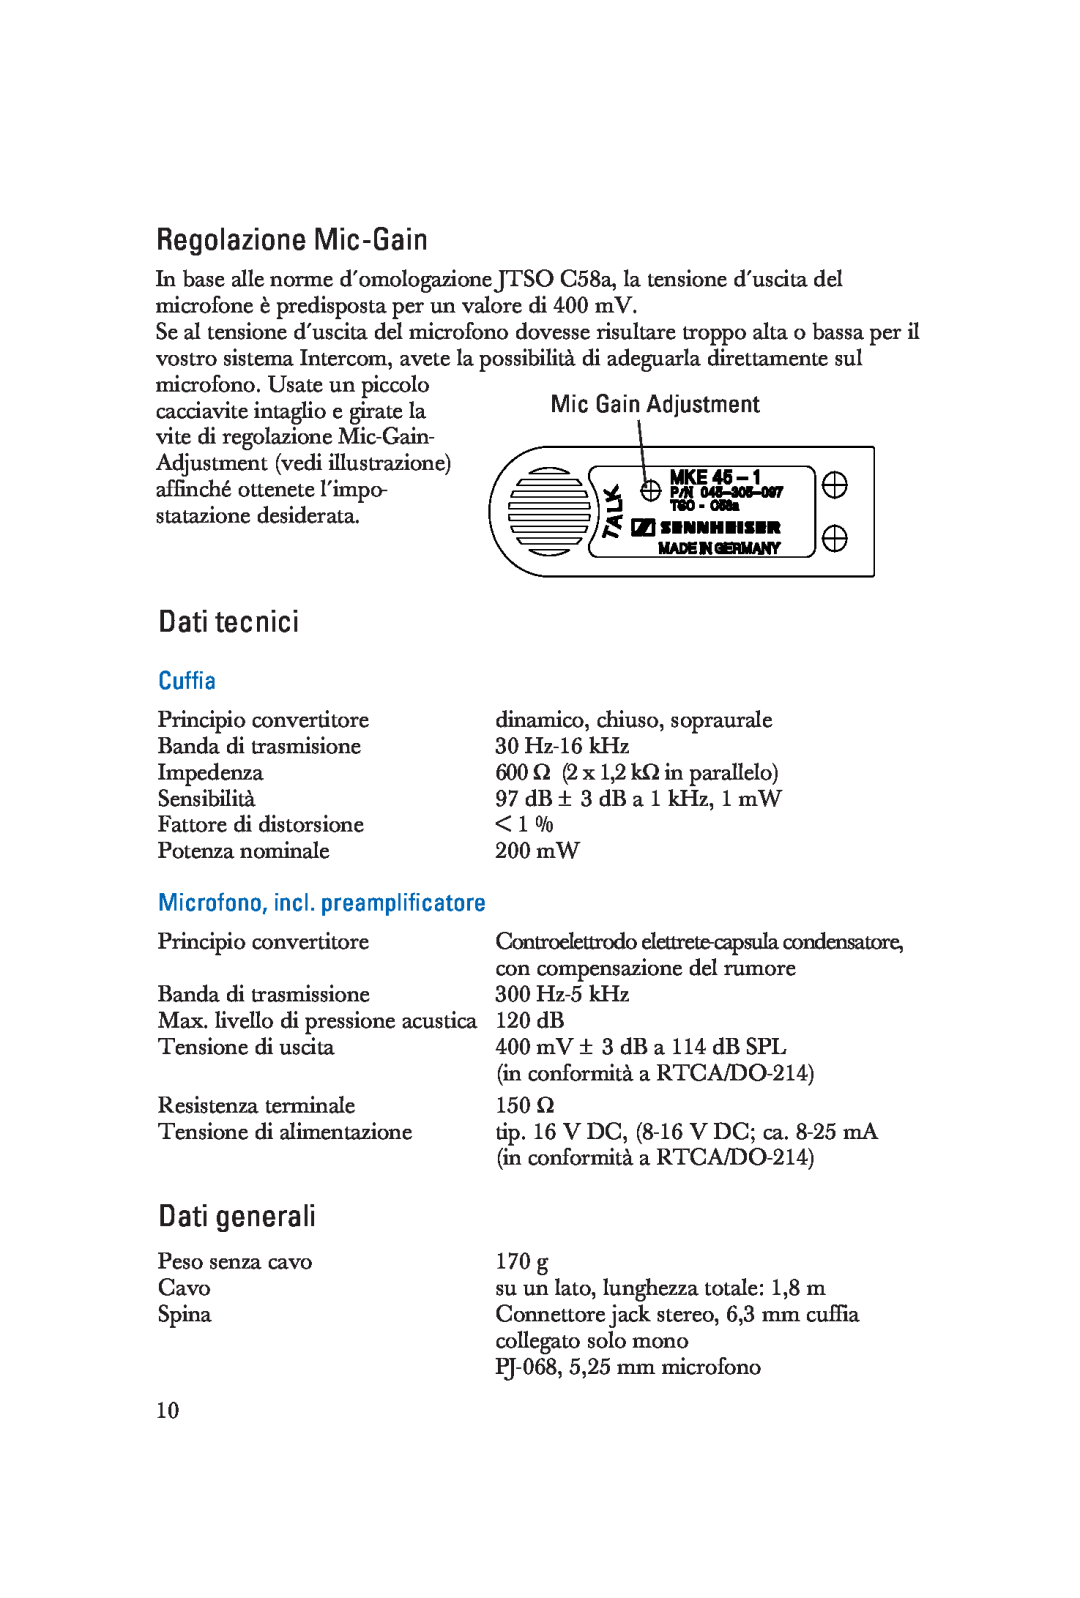 Sennheiser HME 25-KA-2 manual Regolazione Mic-Gain, Dati tecnici, Dati generali, Cuffia, Microfono, incl. preamplificatore 